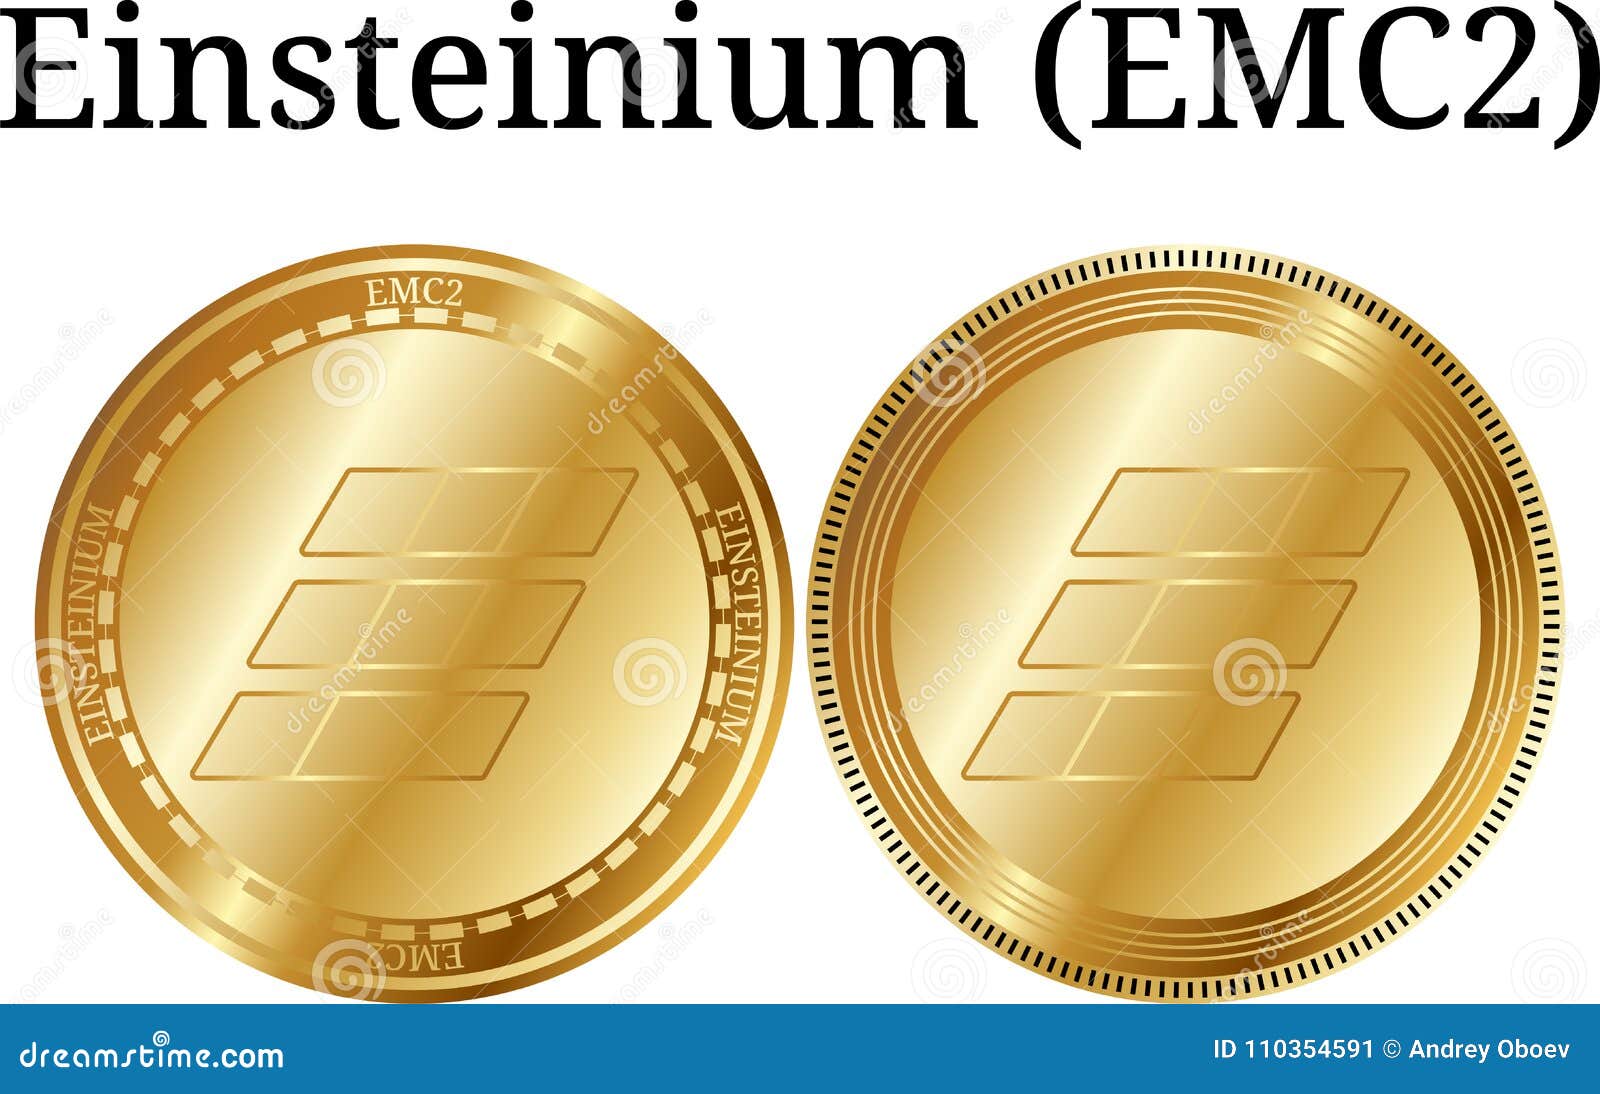 Einsteinium (EMC2) - Events & News